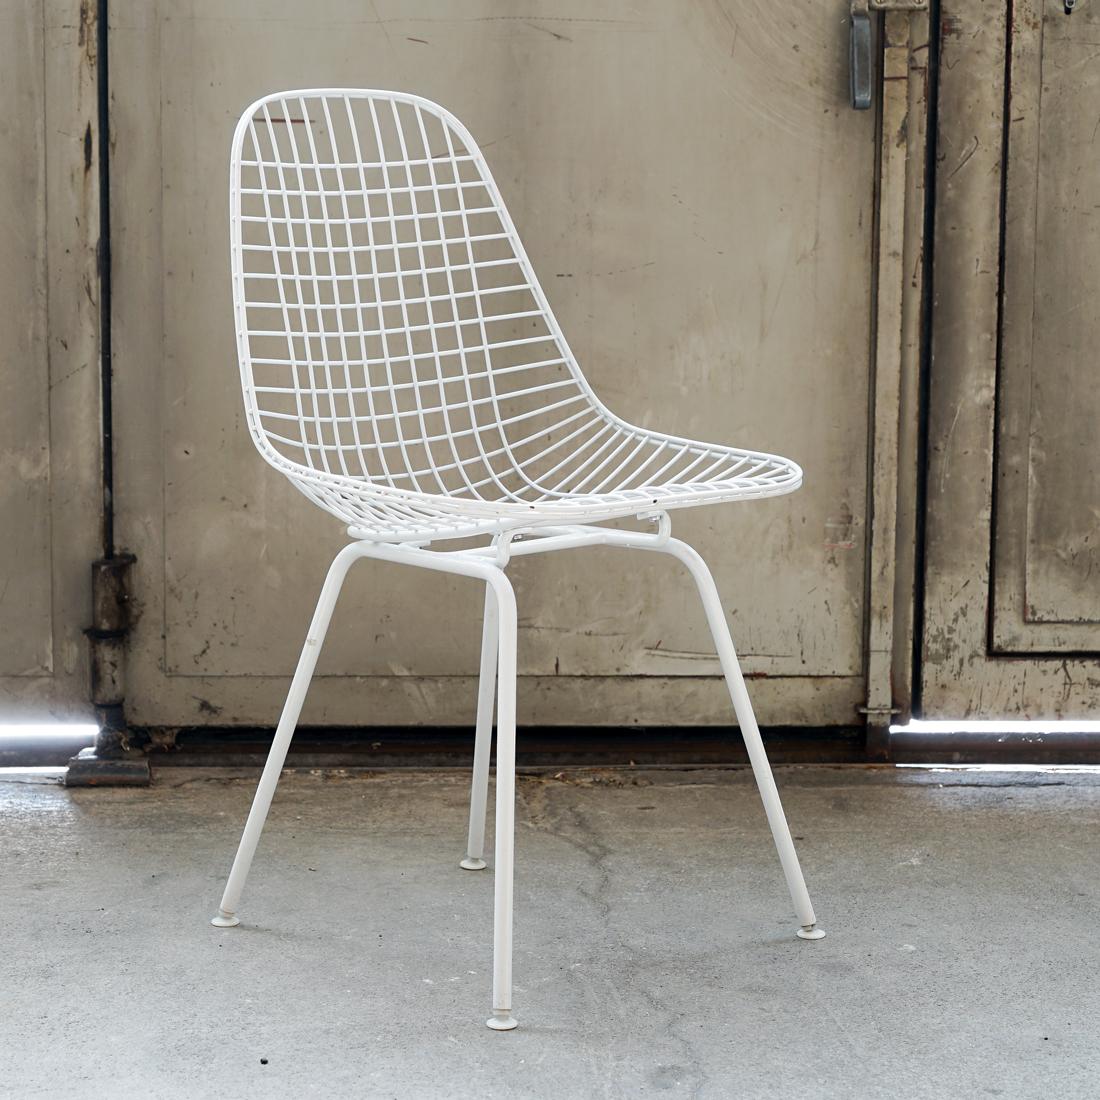 Mit dem Wire Chair aus geschweißtem Stahldraht variierten Charles und Ray Eames das Thema der organisch geformten, einteiligen Sitzschale mit einem Ausdruck von leichter Transparenz und hoher Technizität. Dieses Modell DKX ist mit einem